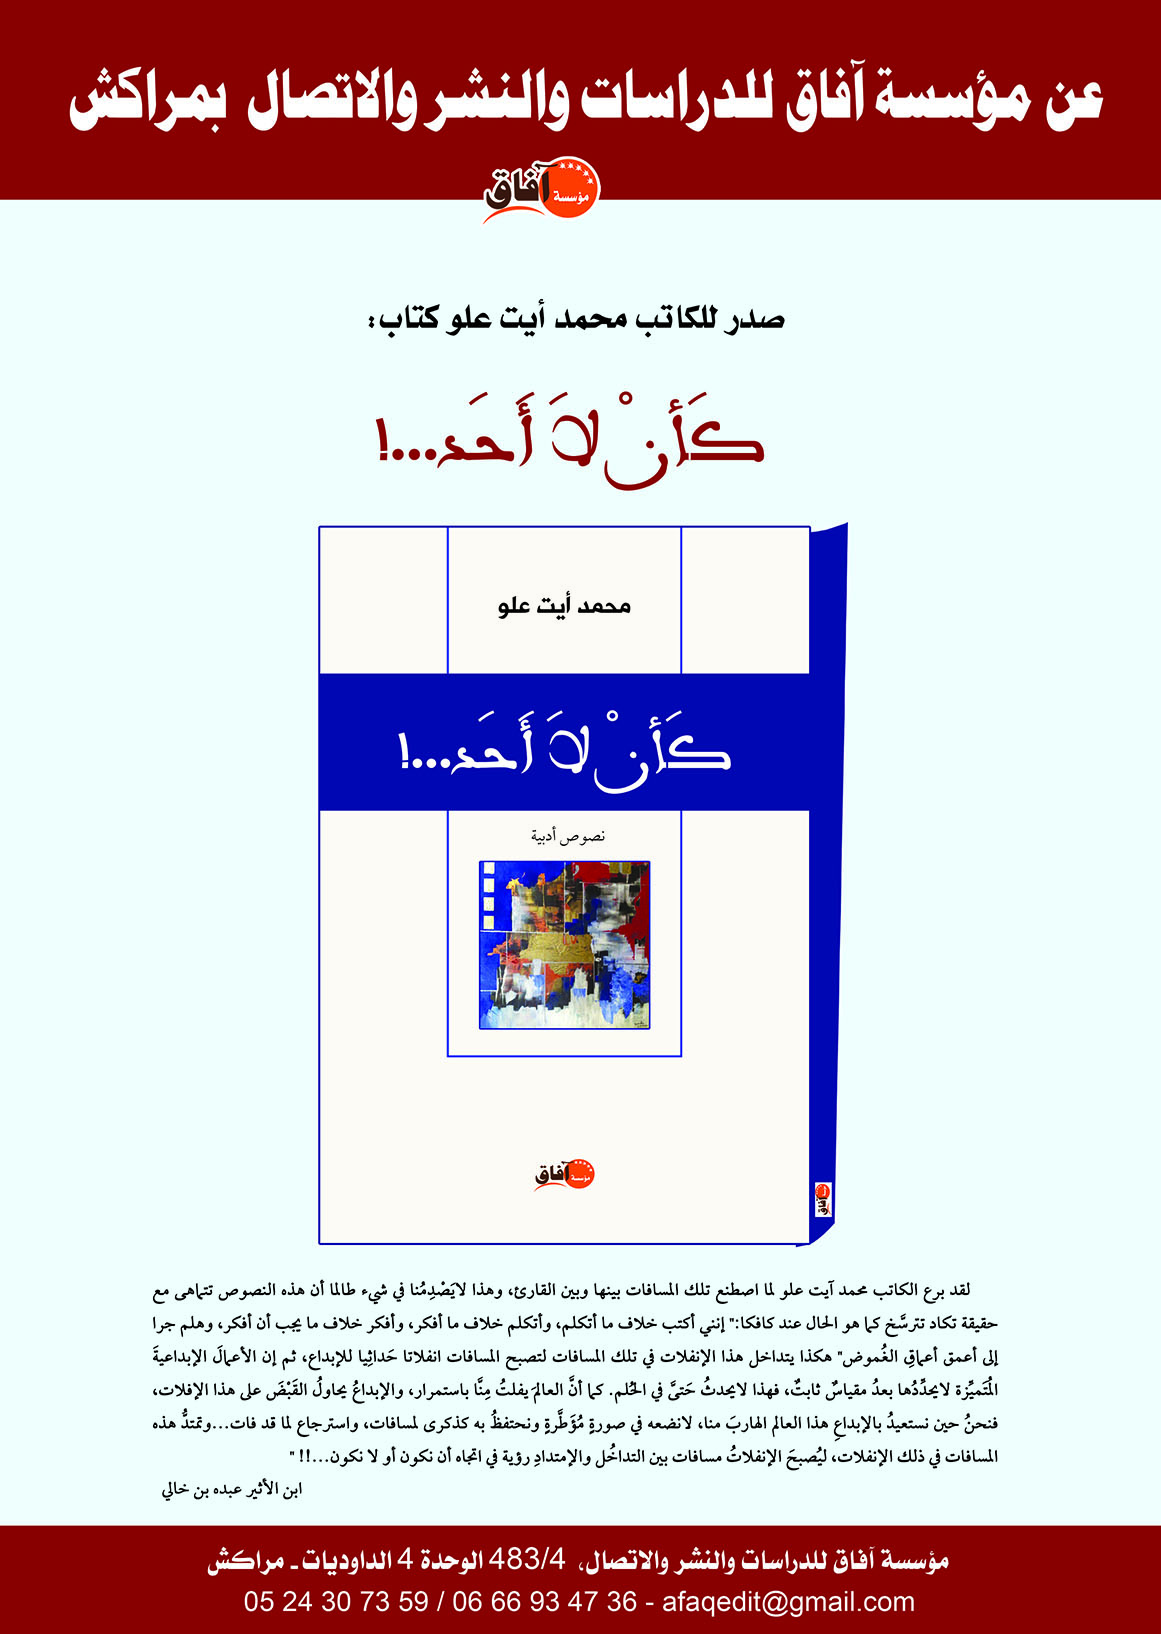 قراءة في منجز المؤلَّف الجديد للكاتب المغربي محمد آيت علو "كـأَنْ لا أَحَدْ"